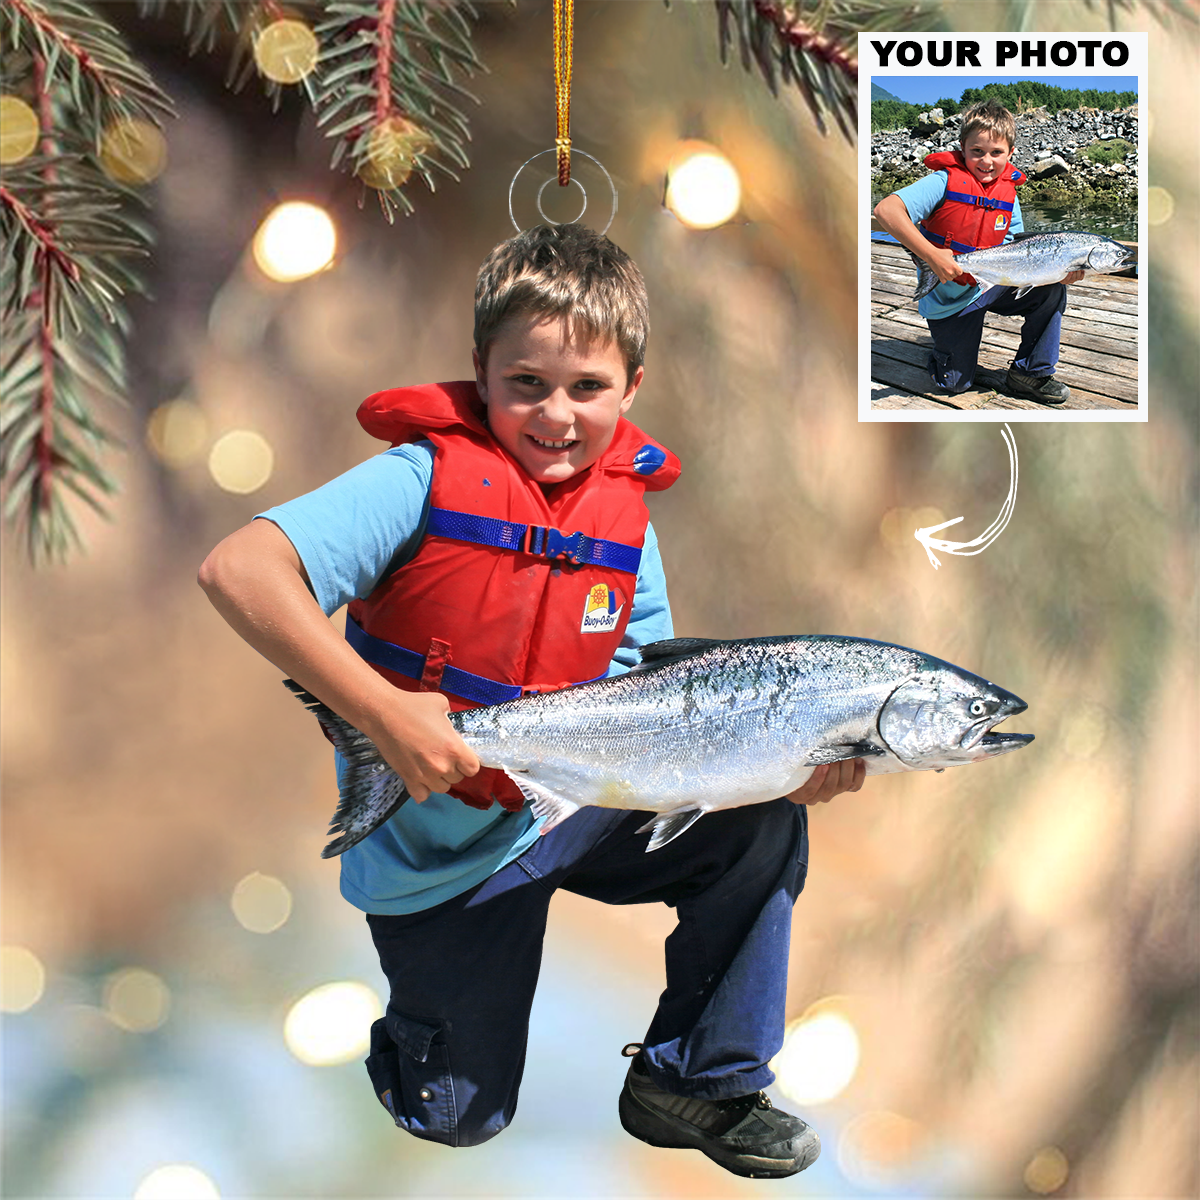 Custom Photo Kid Fishing Ornament Gift For Gift For Fishing Lovers, Family Members, Kids - Custom Upload Photo Fisherman